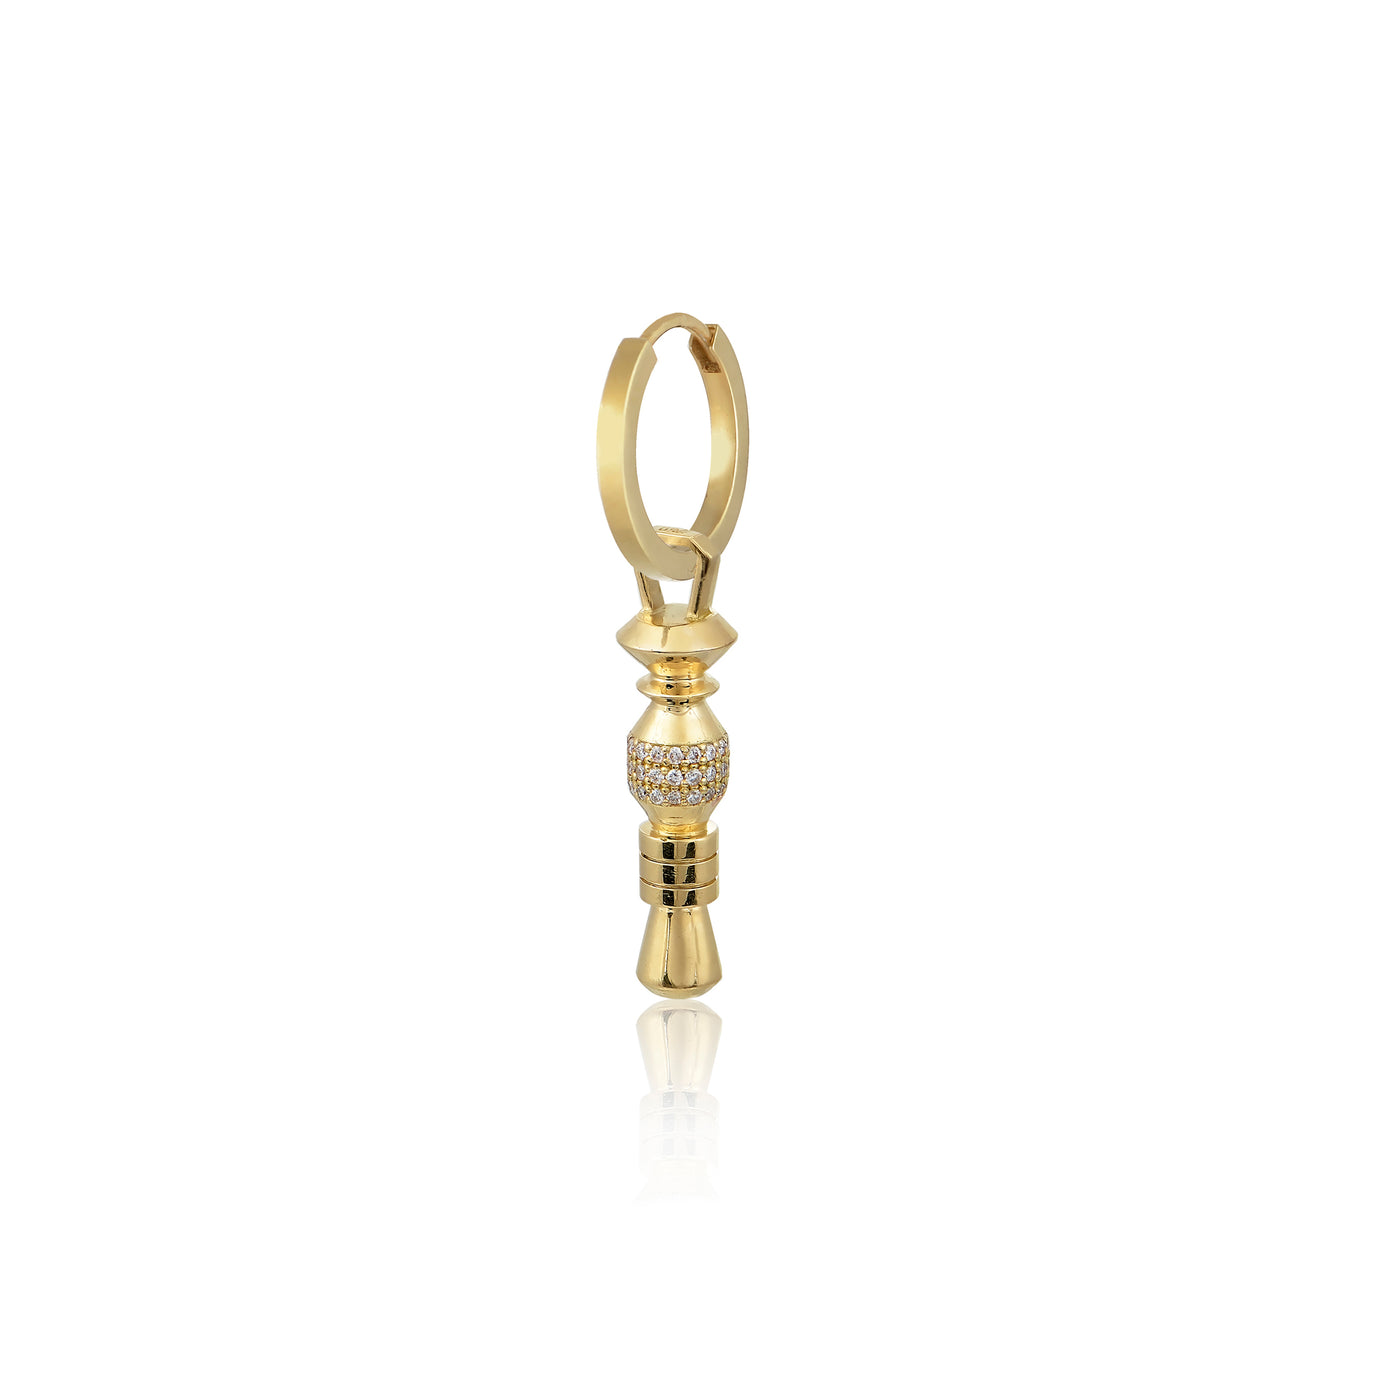 Squared Hoop Earrings in 18k gold - Alexia Gryllaki - Ileana Makri store